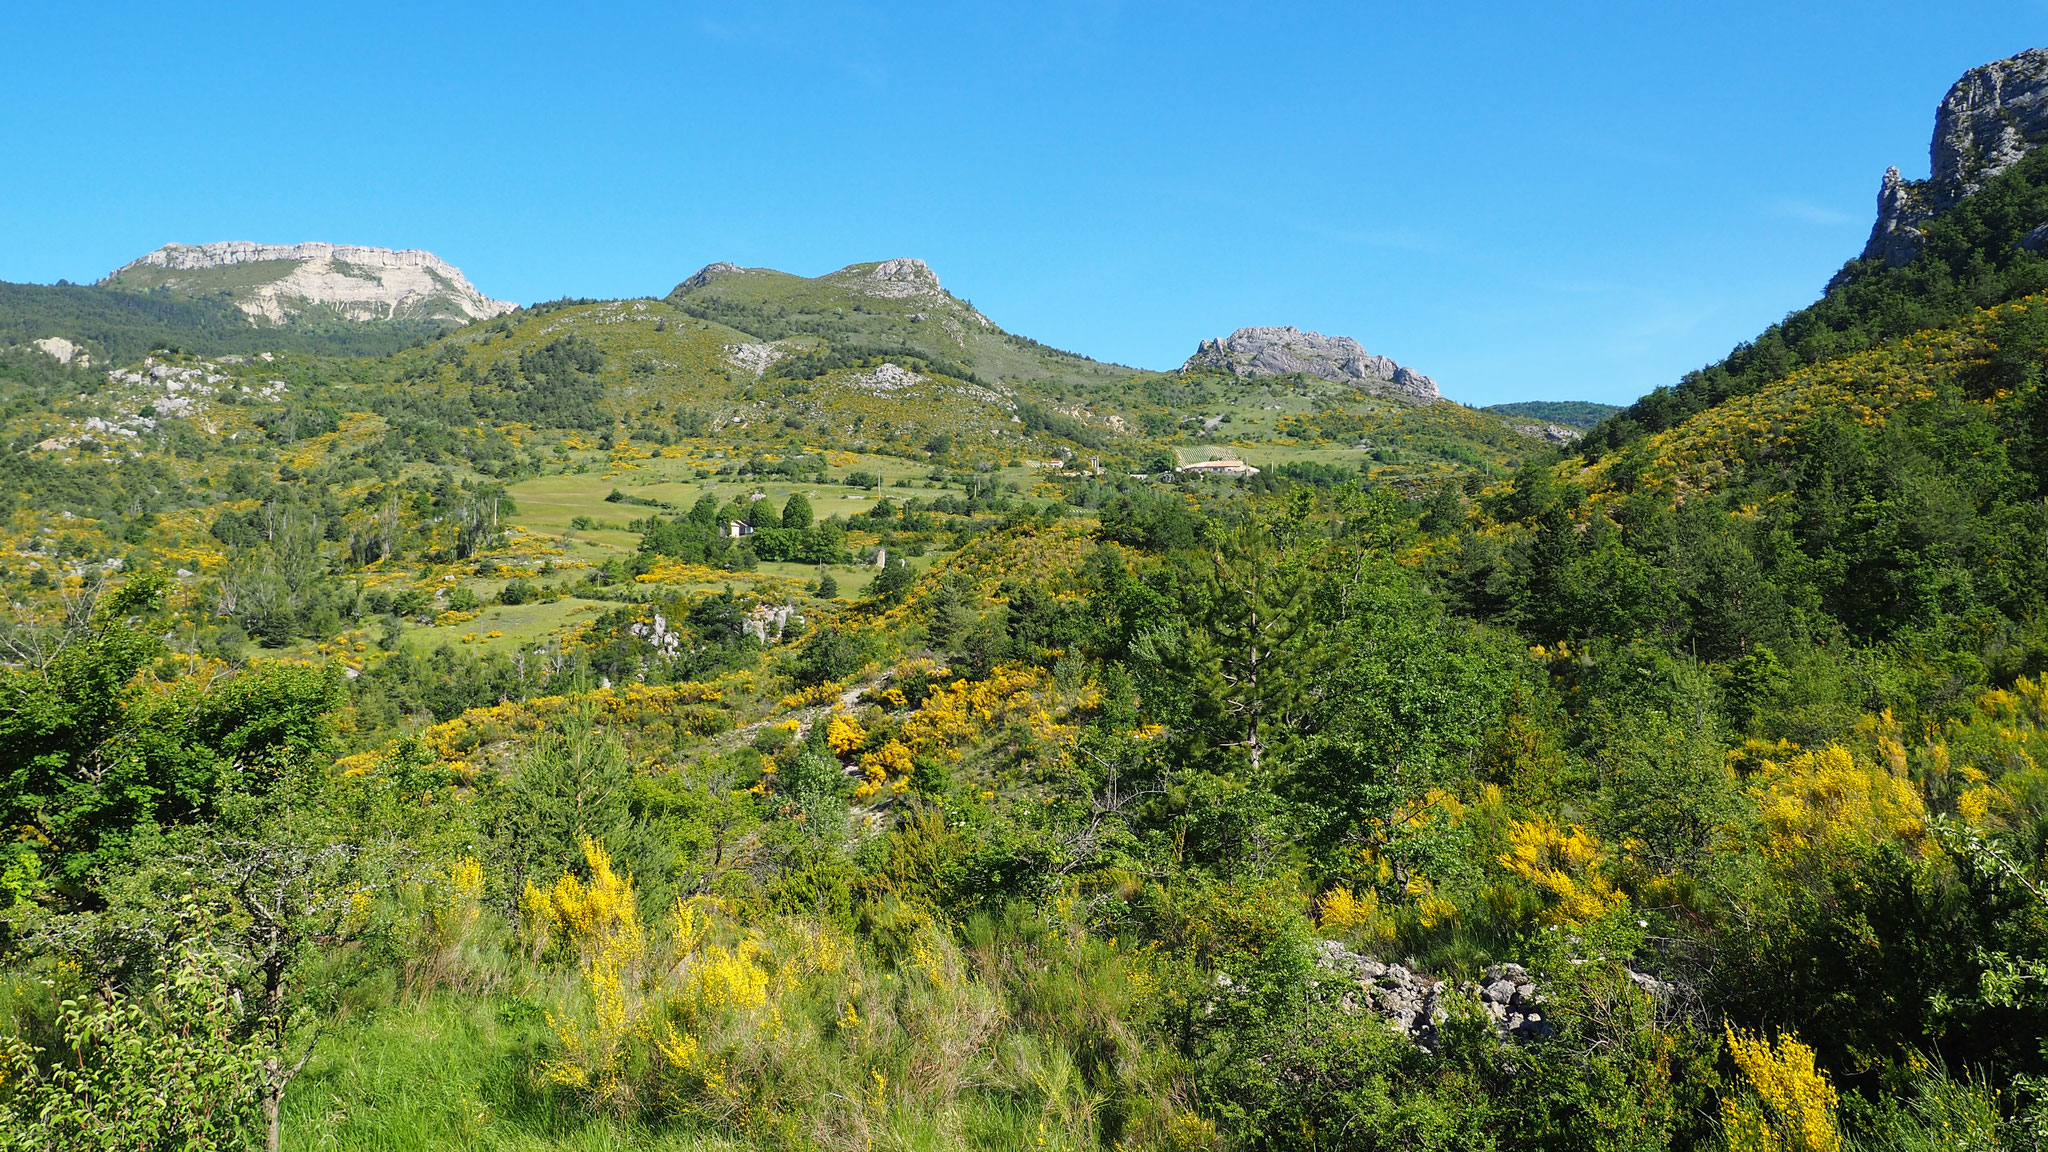 En balade près d'Izon. Izon Nature : hébergements et table d'hôtes insolites et écoresponsables dans la Drôme provençale, trek dans la Méouge